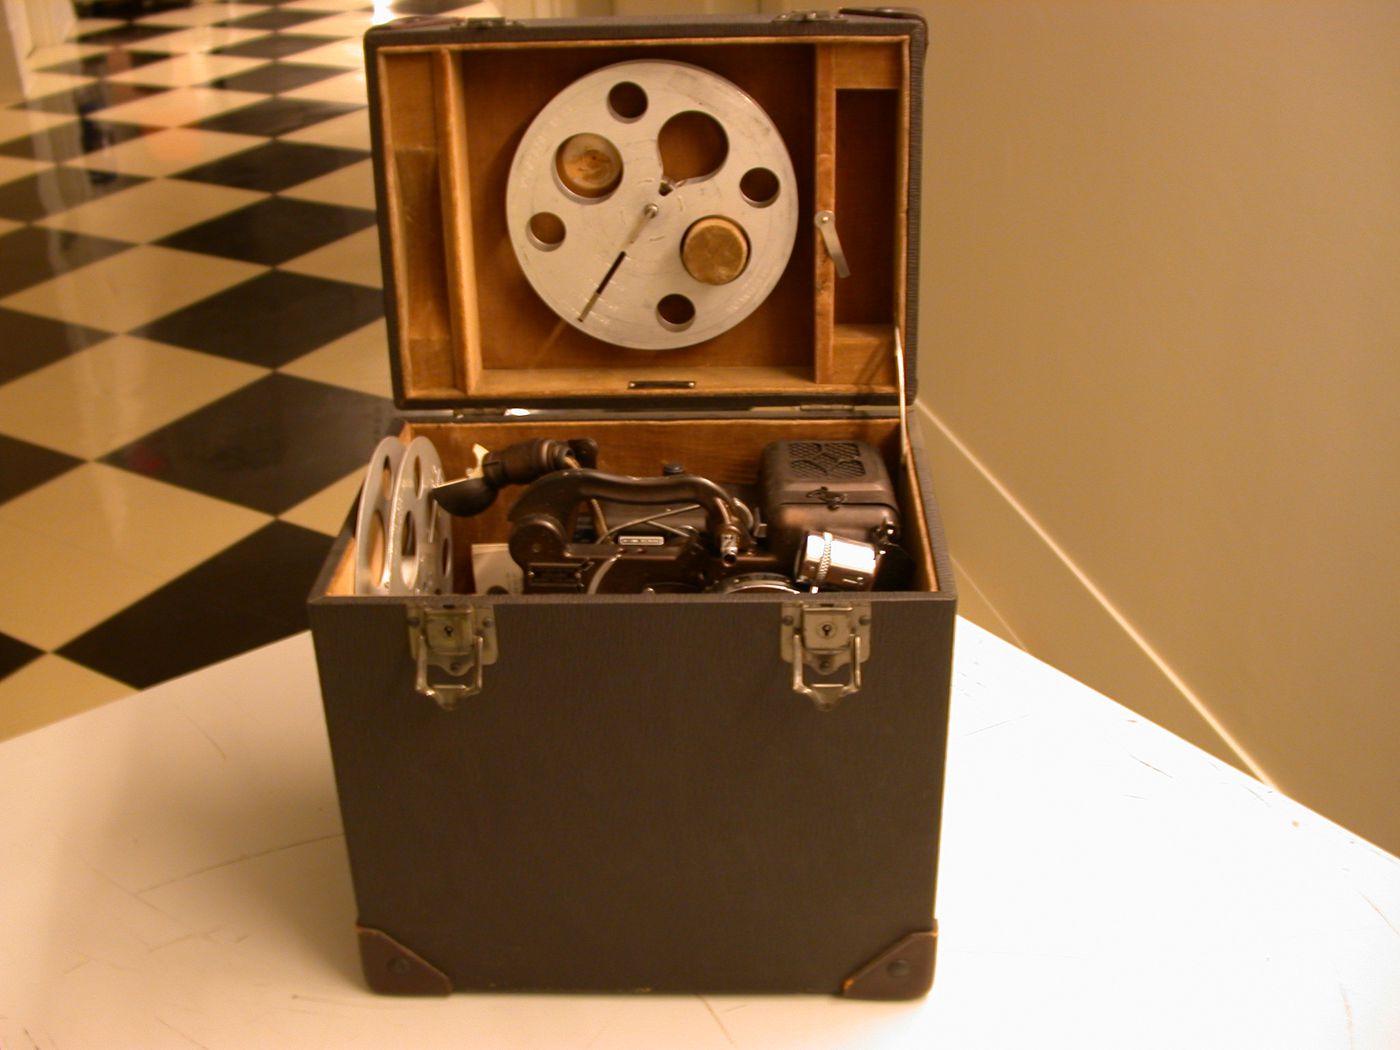 Projecteur de films, bobines (reels), ampoule et feuillet d'instructions dans leur boîtier